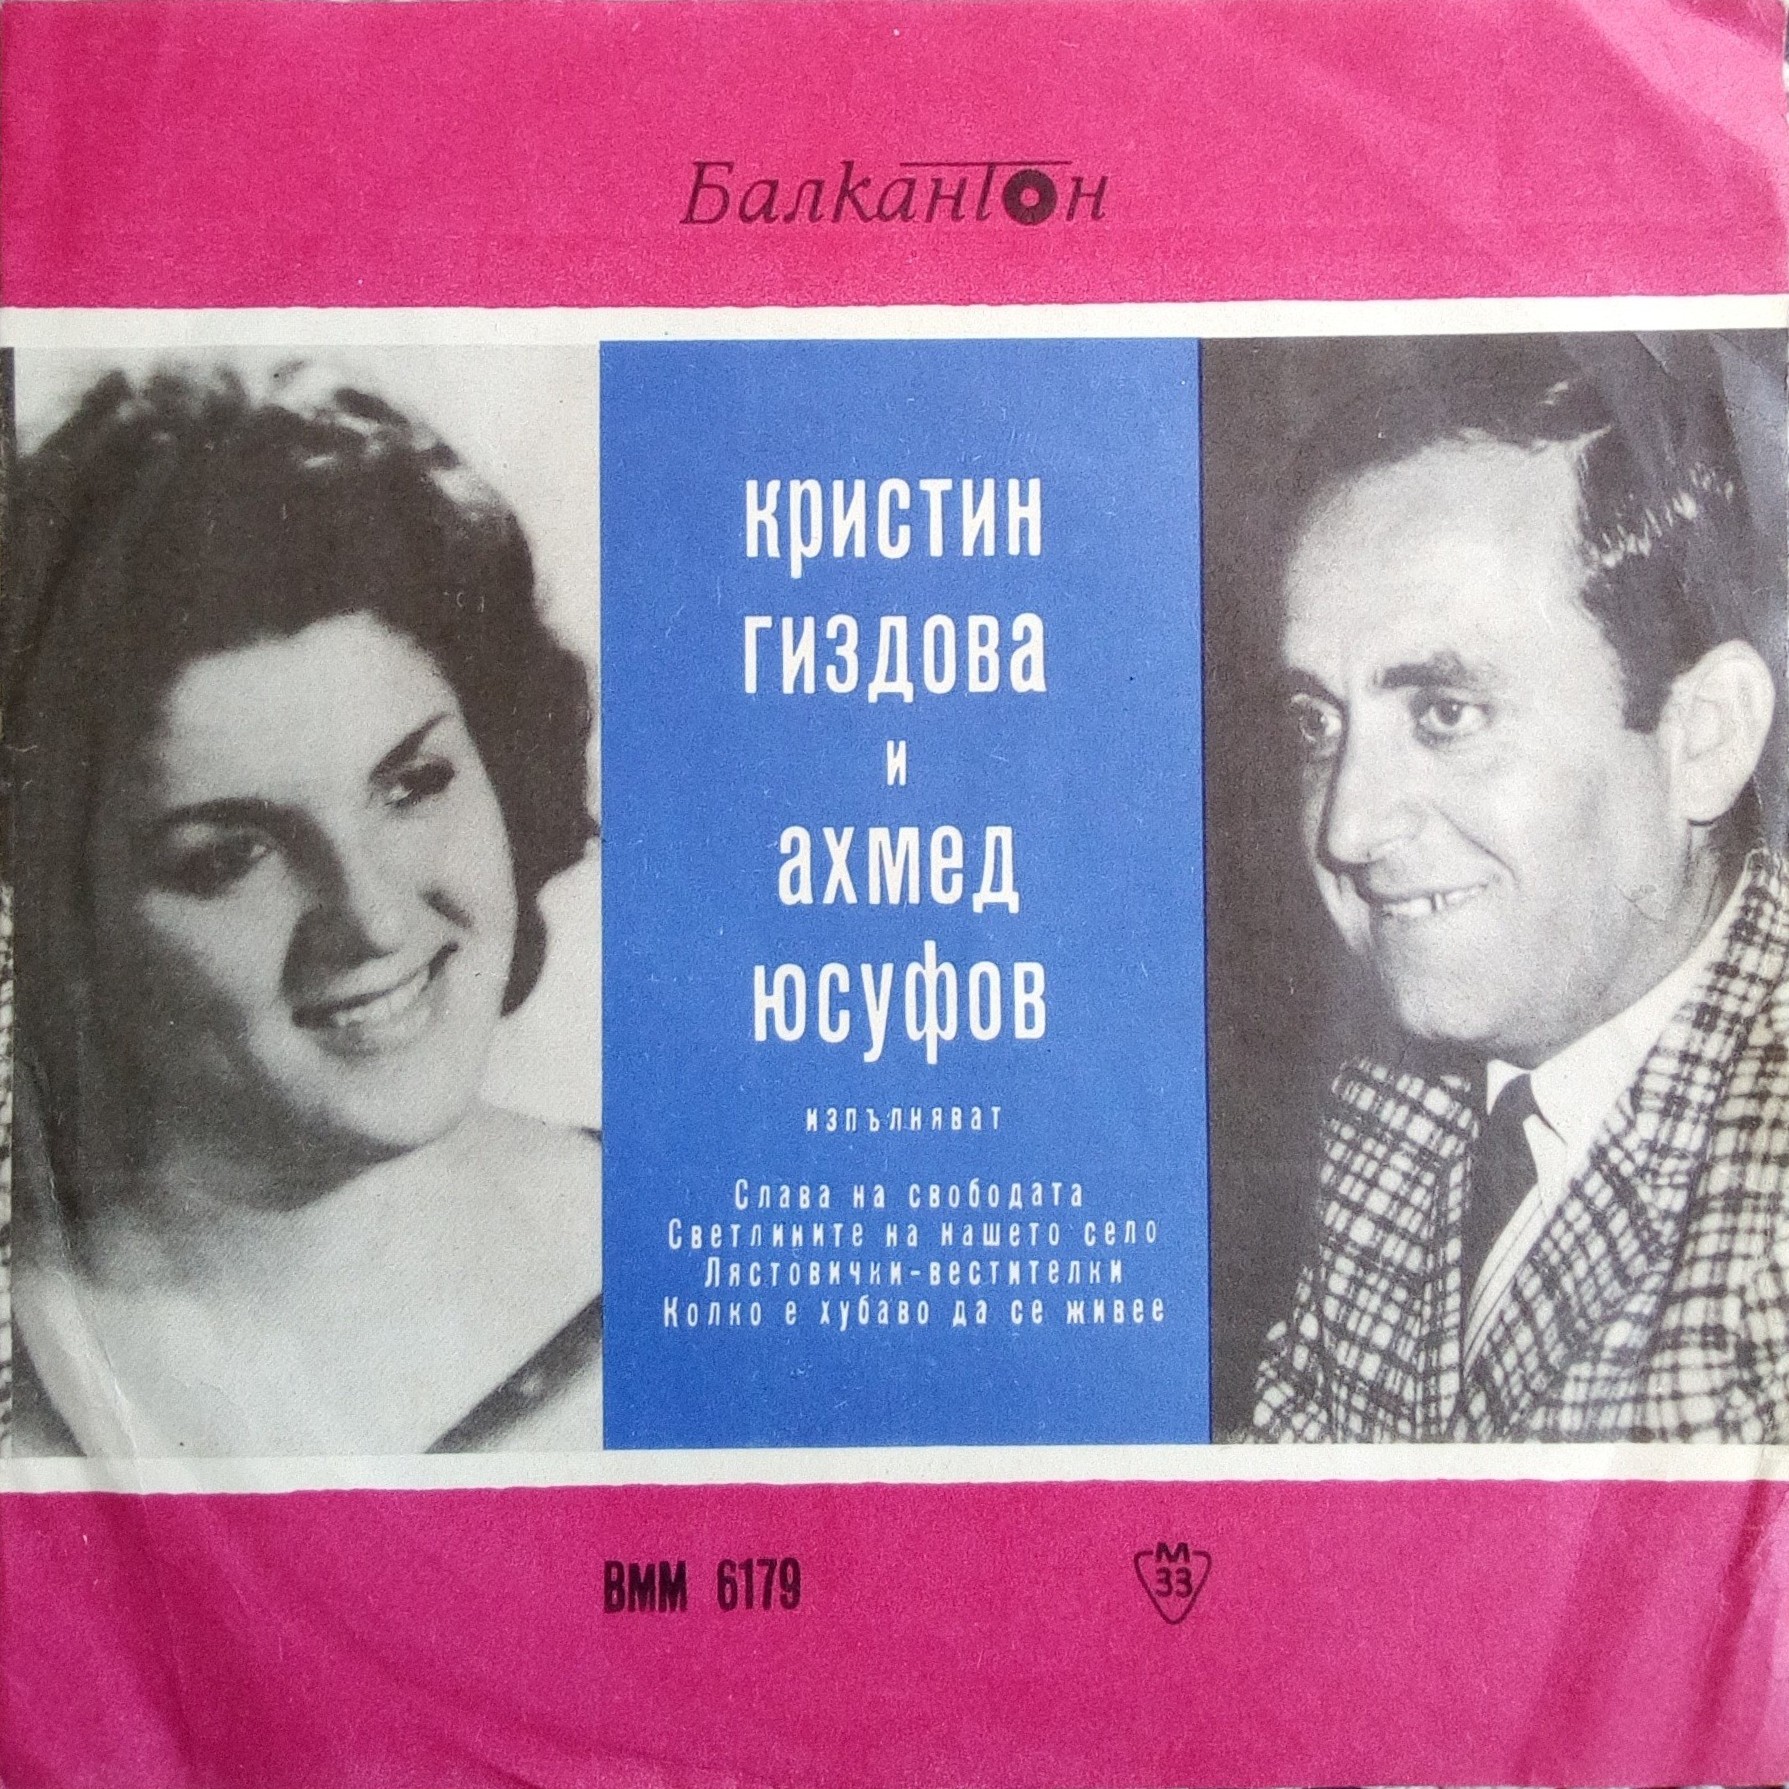 Кристин Гиздова / Ахмед Юсуфов. Турски съвременни песни